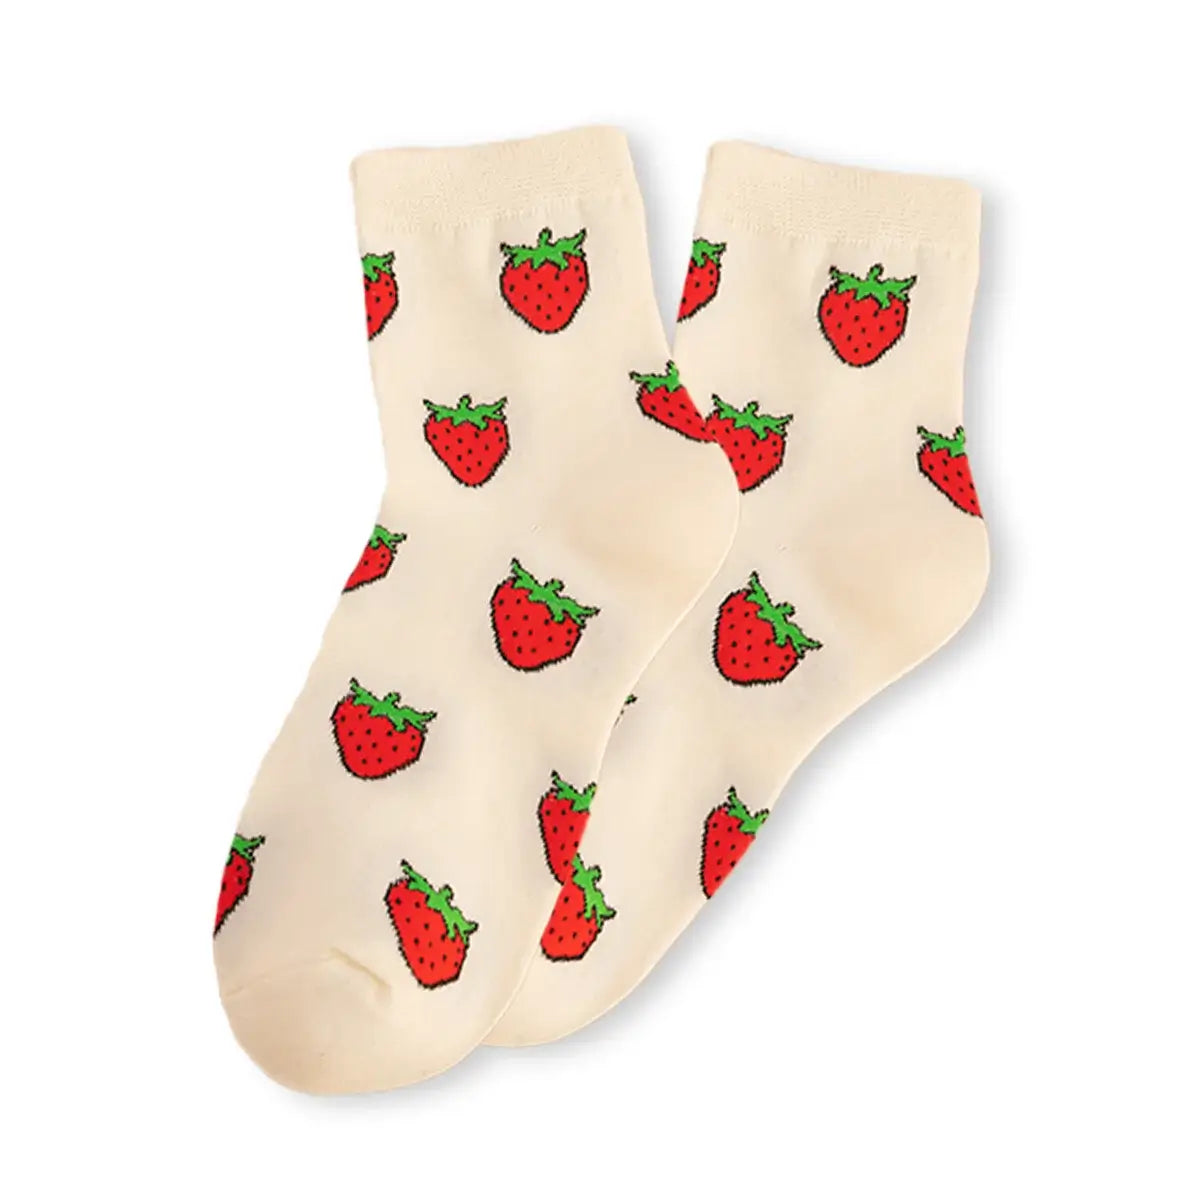 Chaussettes fraise longues en coton à motif fruit pour adultes | Chaussettes douces et confortables | Fabriquées à partir de matériaux de haute qualité | Un cadeau parfait pour les hommes et les femmes de tous âges